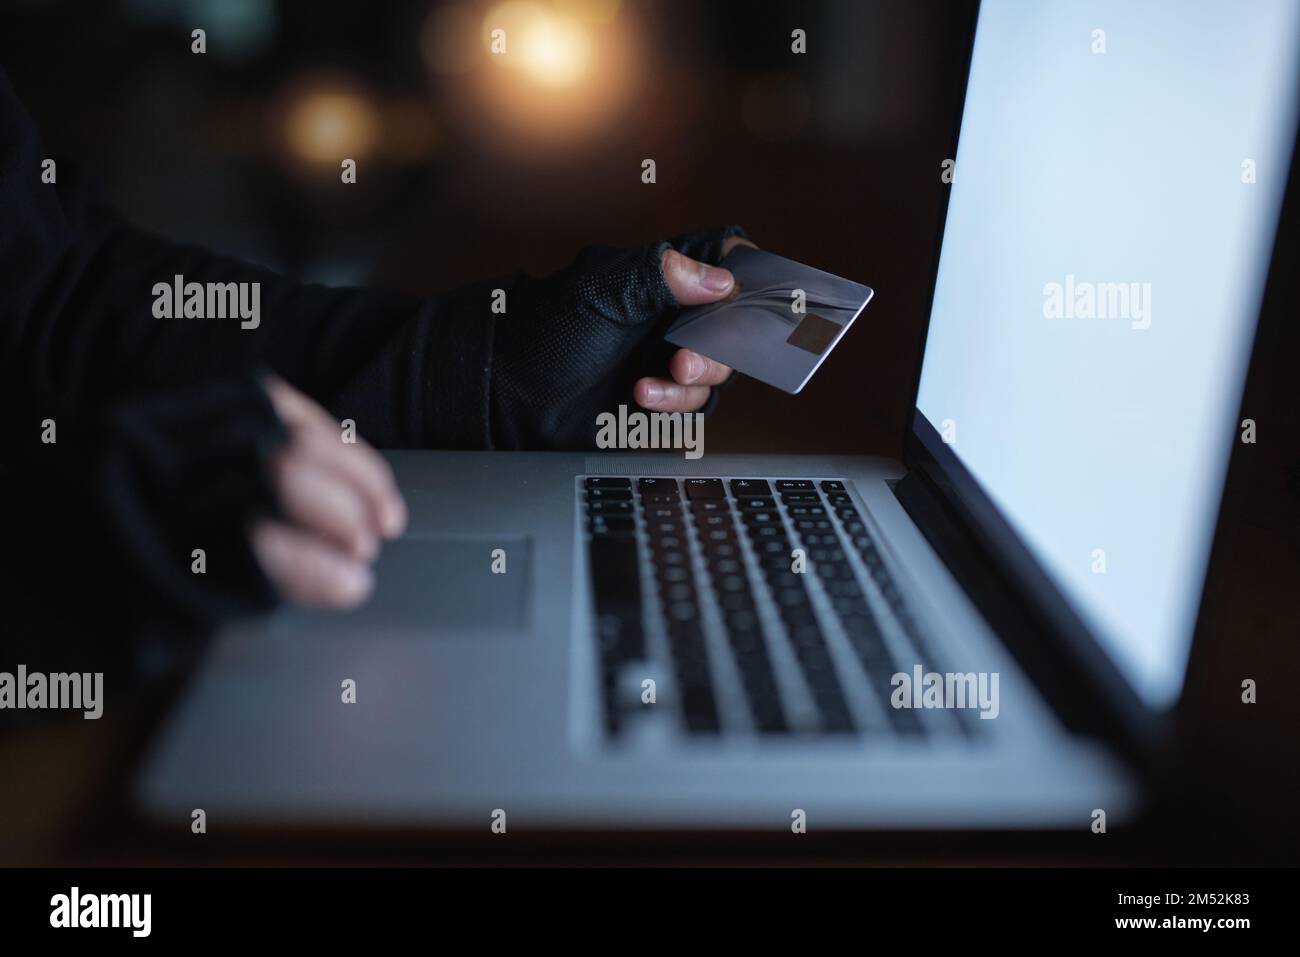 Schützen Sie sich davor, das nächste Opfer von Betrug zu werden. Ein nicht wiedererkennbarer Hacker, der einen Laptop benutzt, um sich in ein Kreditkonto zu hacken. Stockfoto